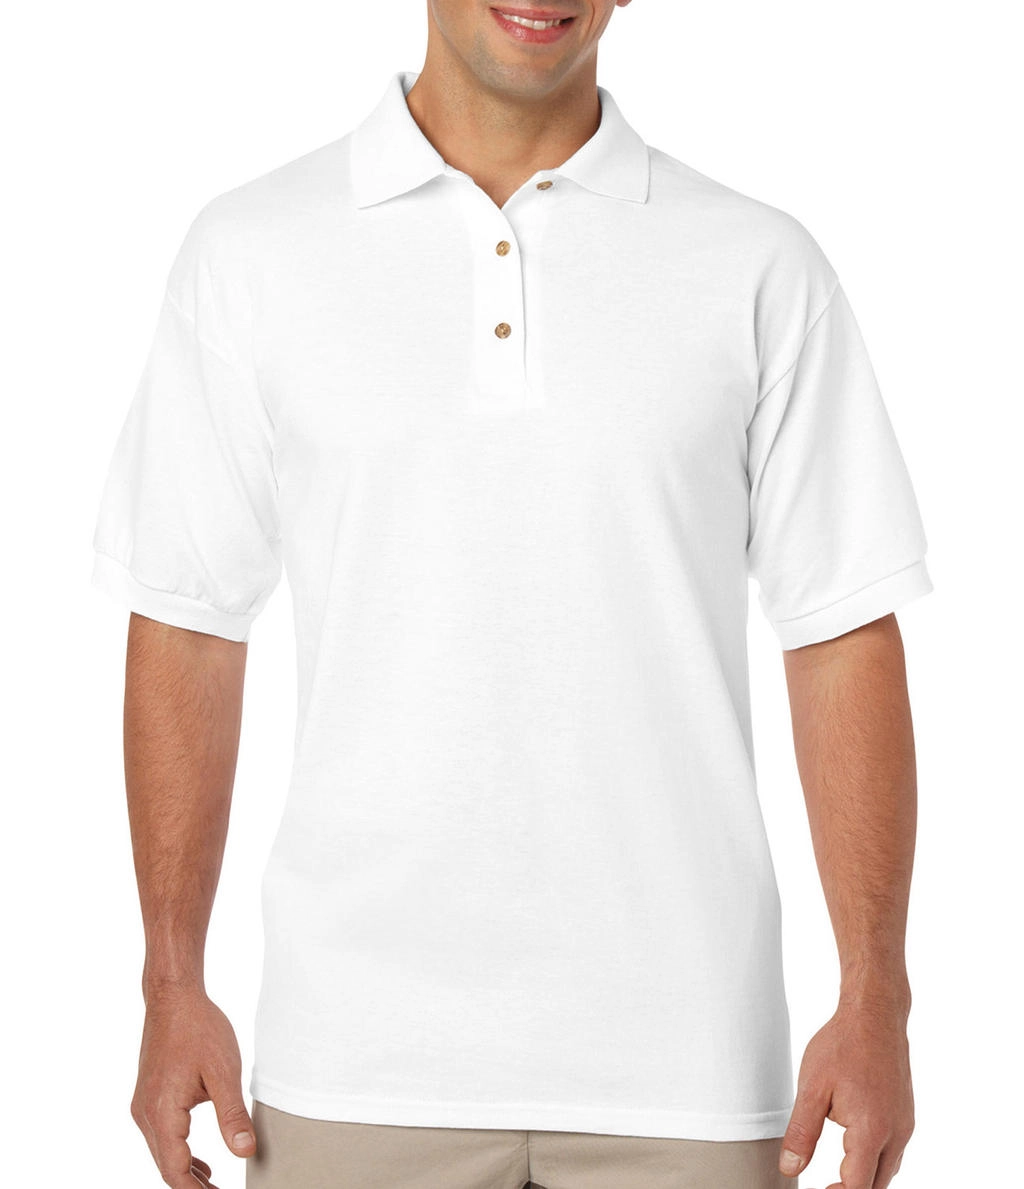 DryBlend Adult Jersey Polo zum Besticken und Bedrucken in der Farbe White mit Ihren Logo, Schriftzug oder Motiv.